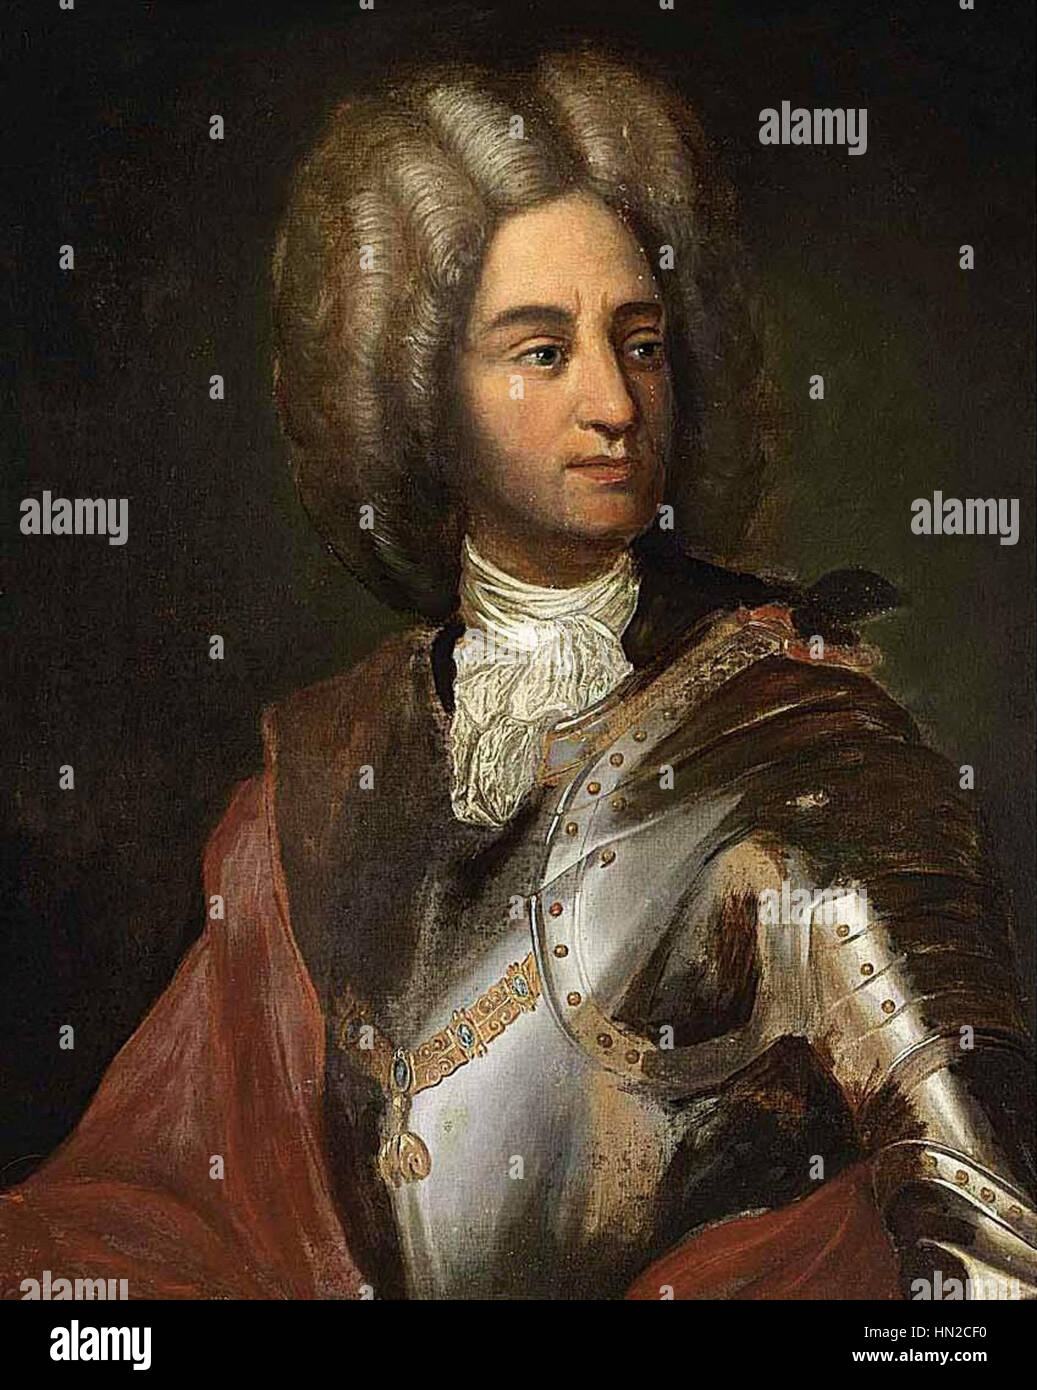 Maximiliano II Emanuel, príncipe elector de Baviera Foto de stock